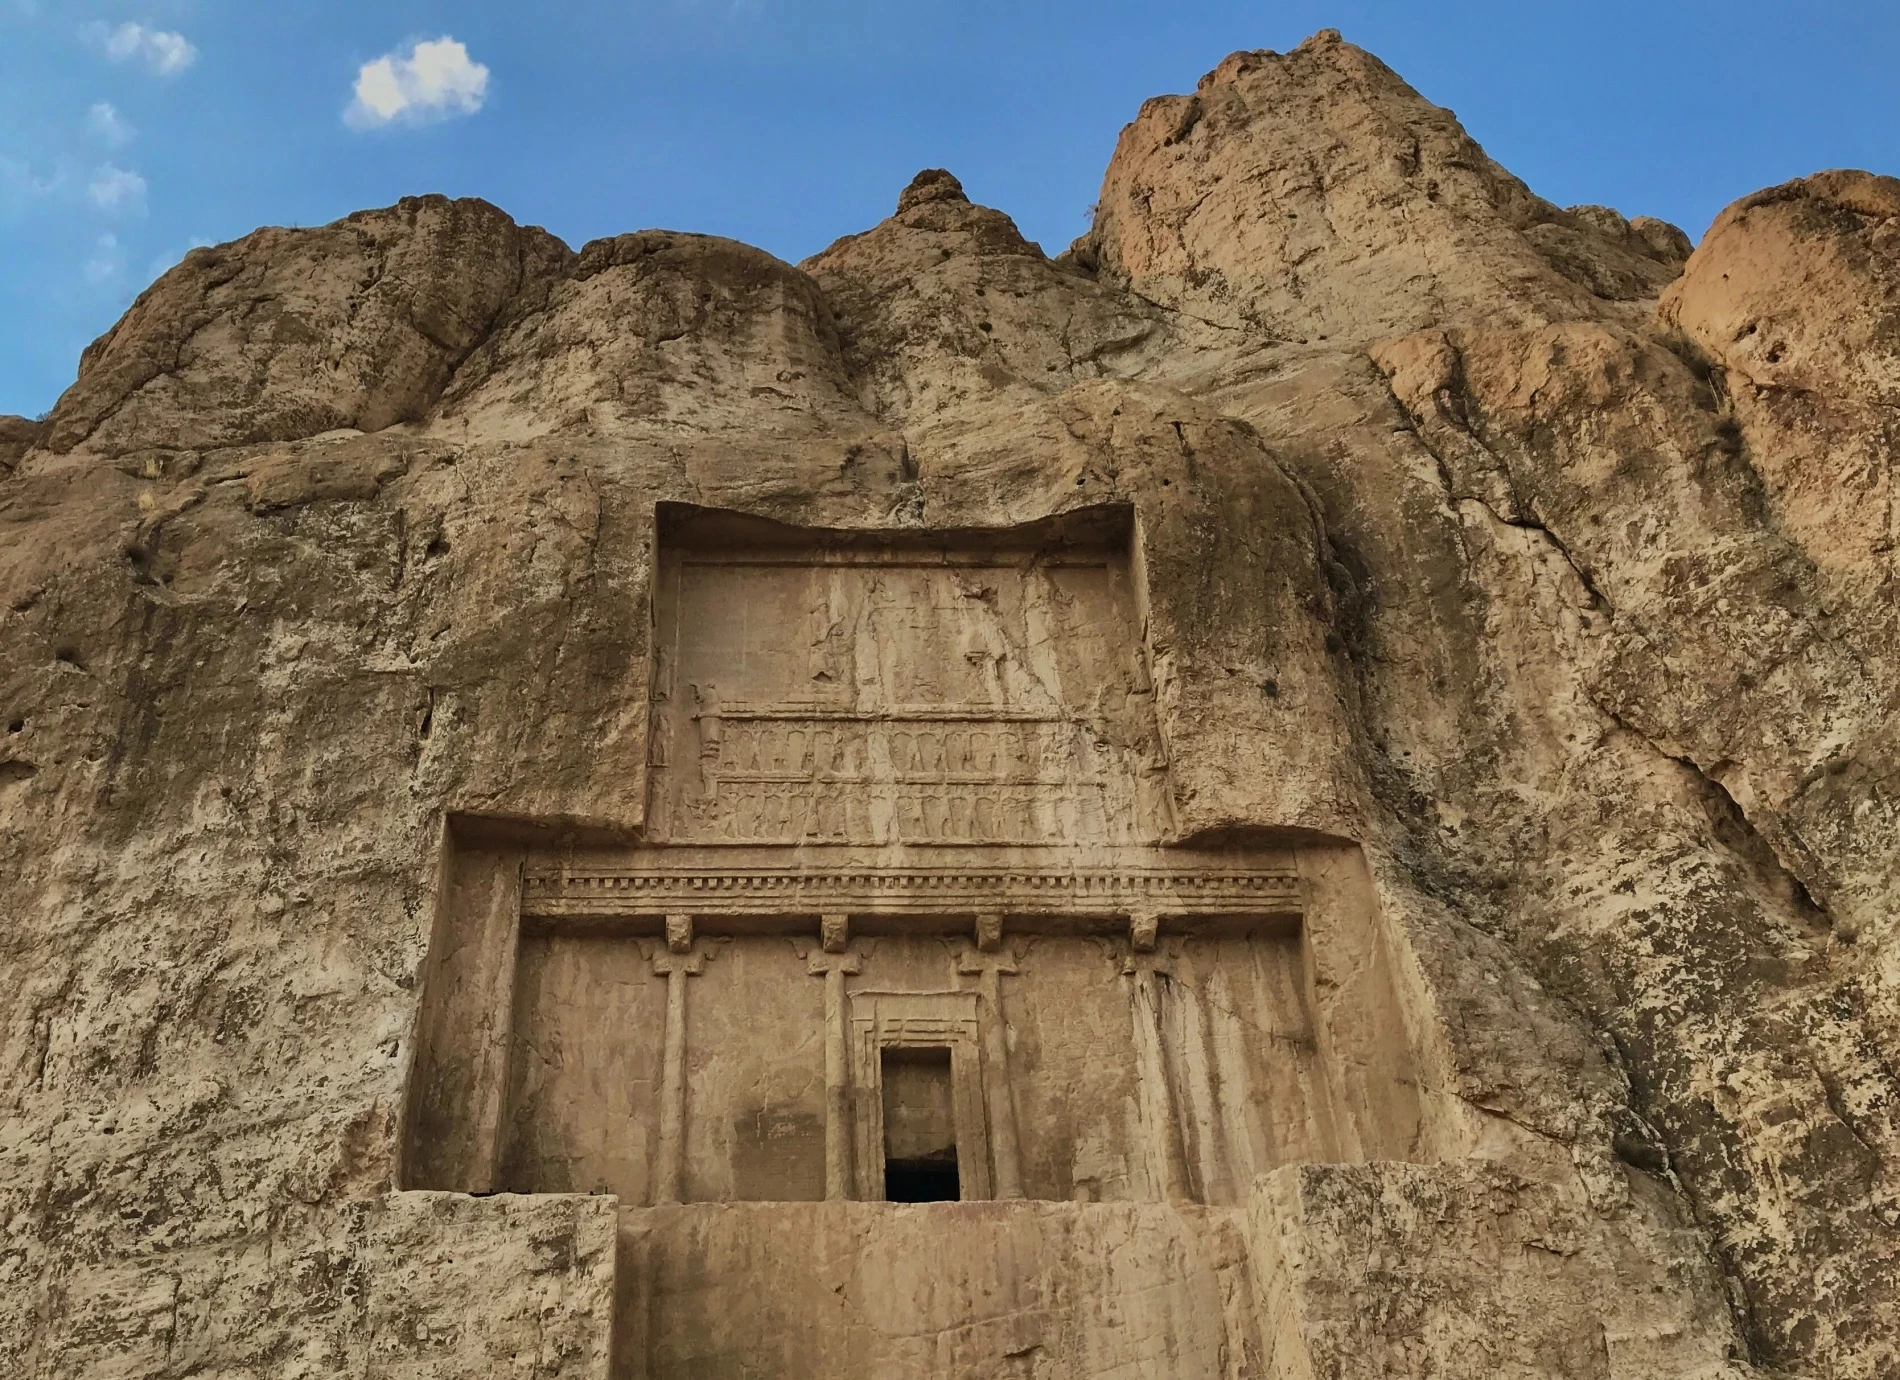 Dichtbij Persepolis is dit grafmonument van de bekende koning Darius te vinden. We kennen hem uit het boek Ezra. Hij heeft 35 jaar geregeerd